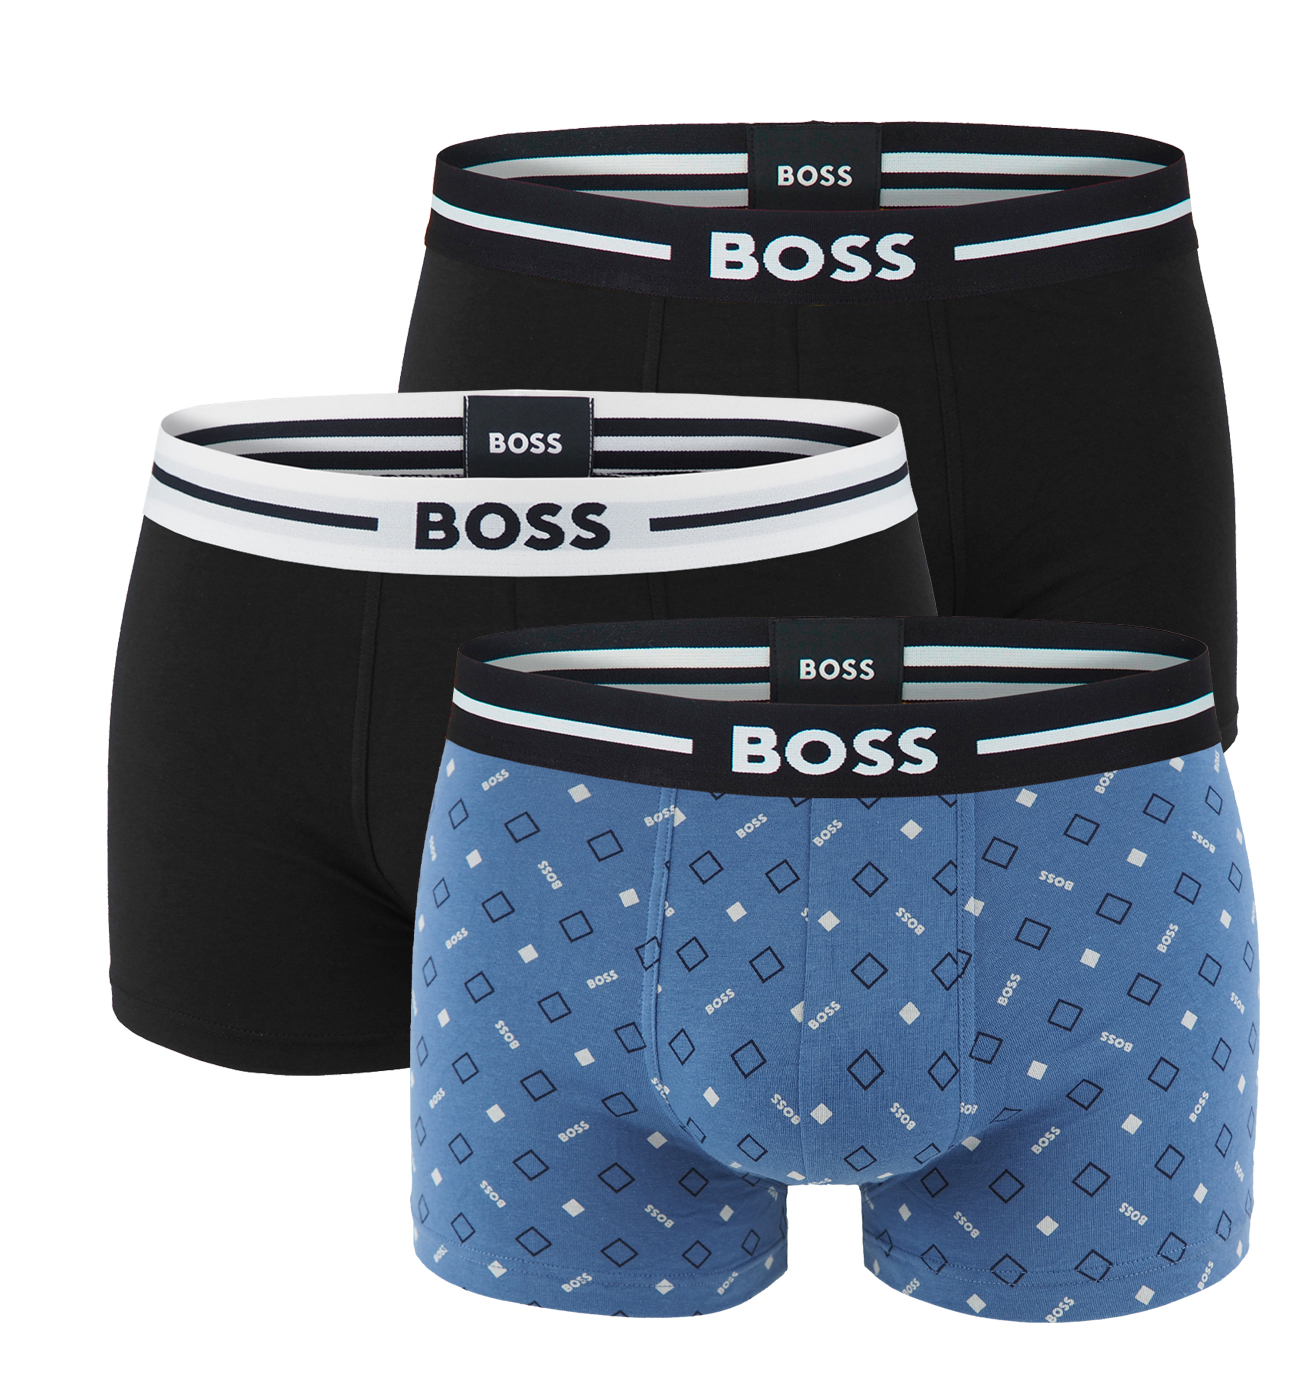 BOSS - boxerky 3PACK cotton stretch BOLD BOSS logo blue & black color z organickej bavlny - limitovaná fashion edícia (HUGO BOSS)